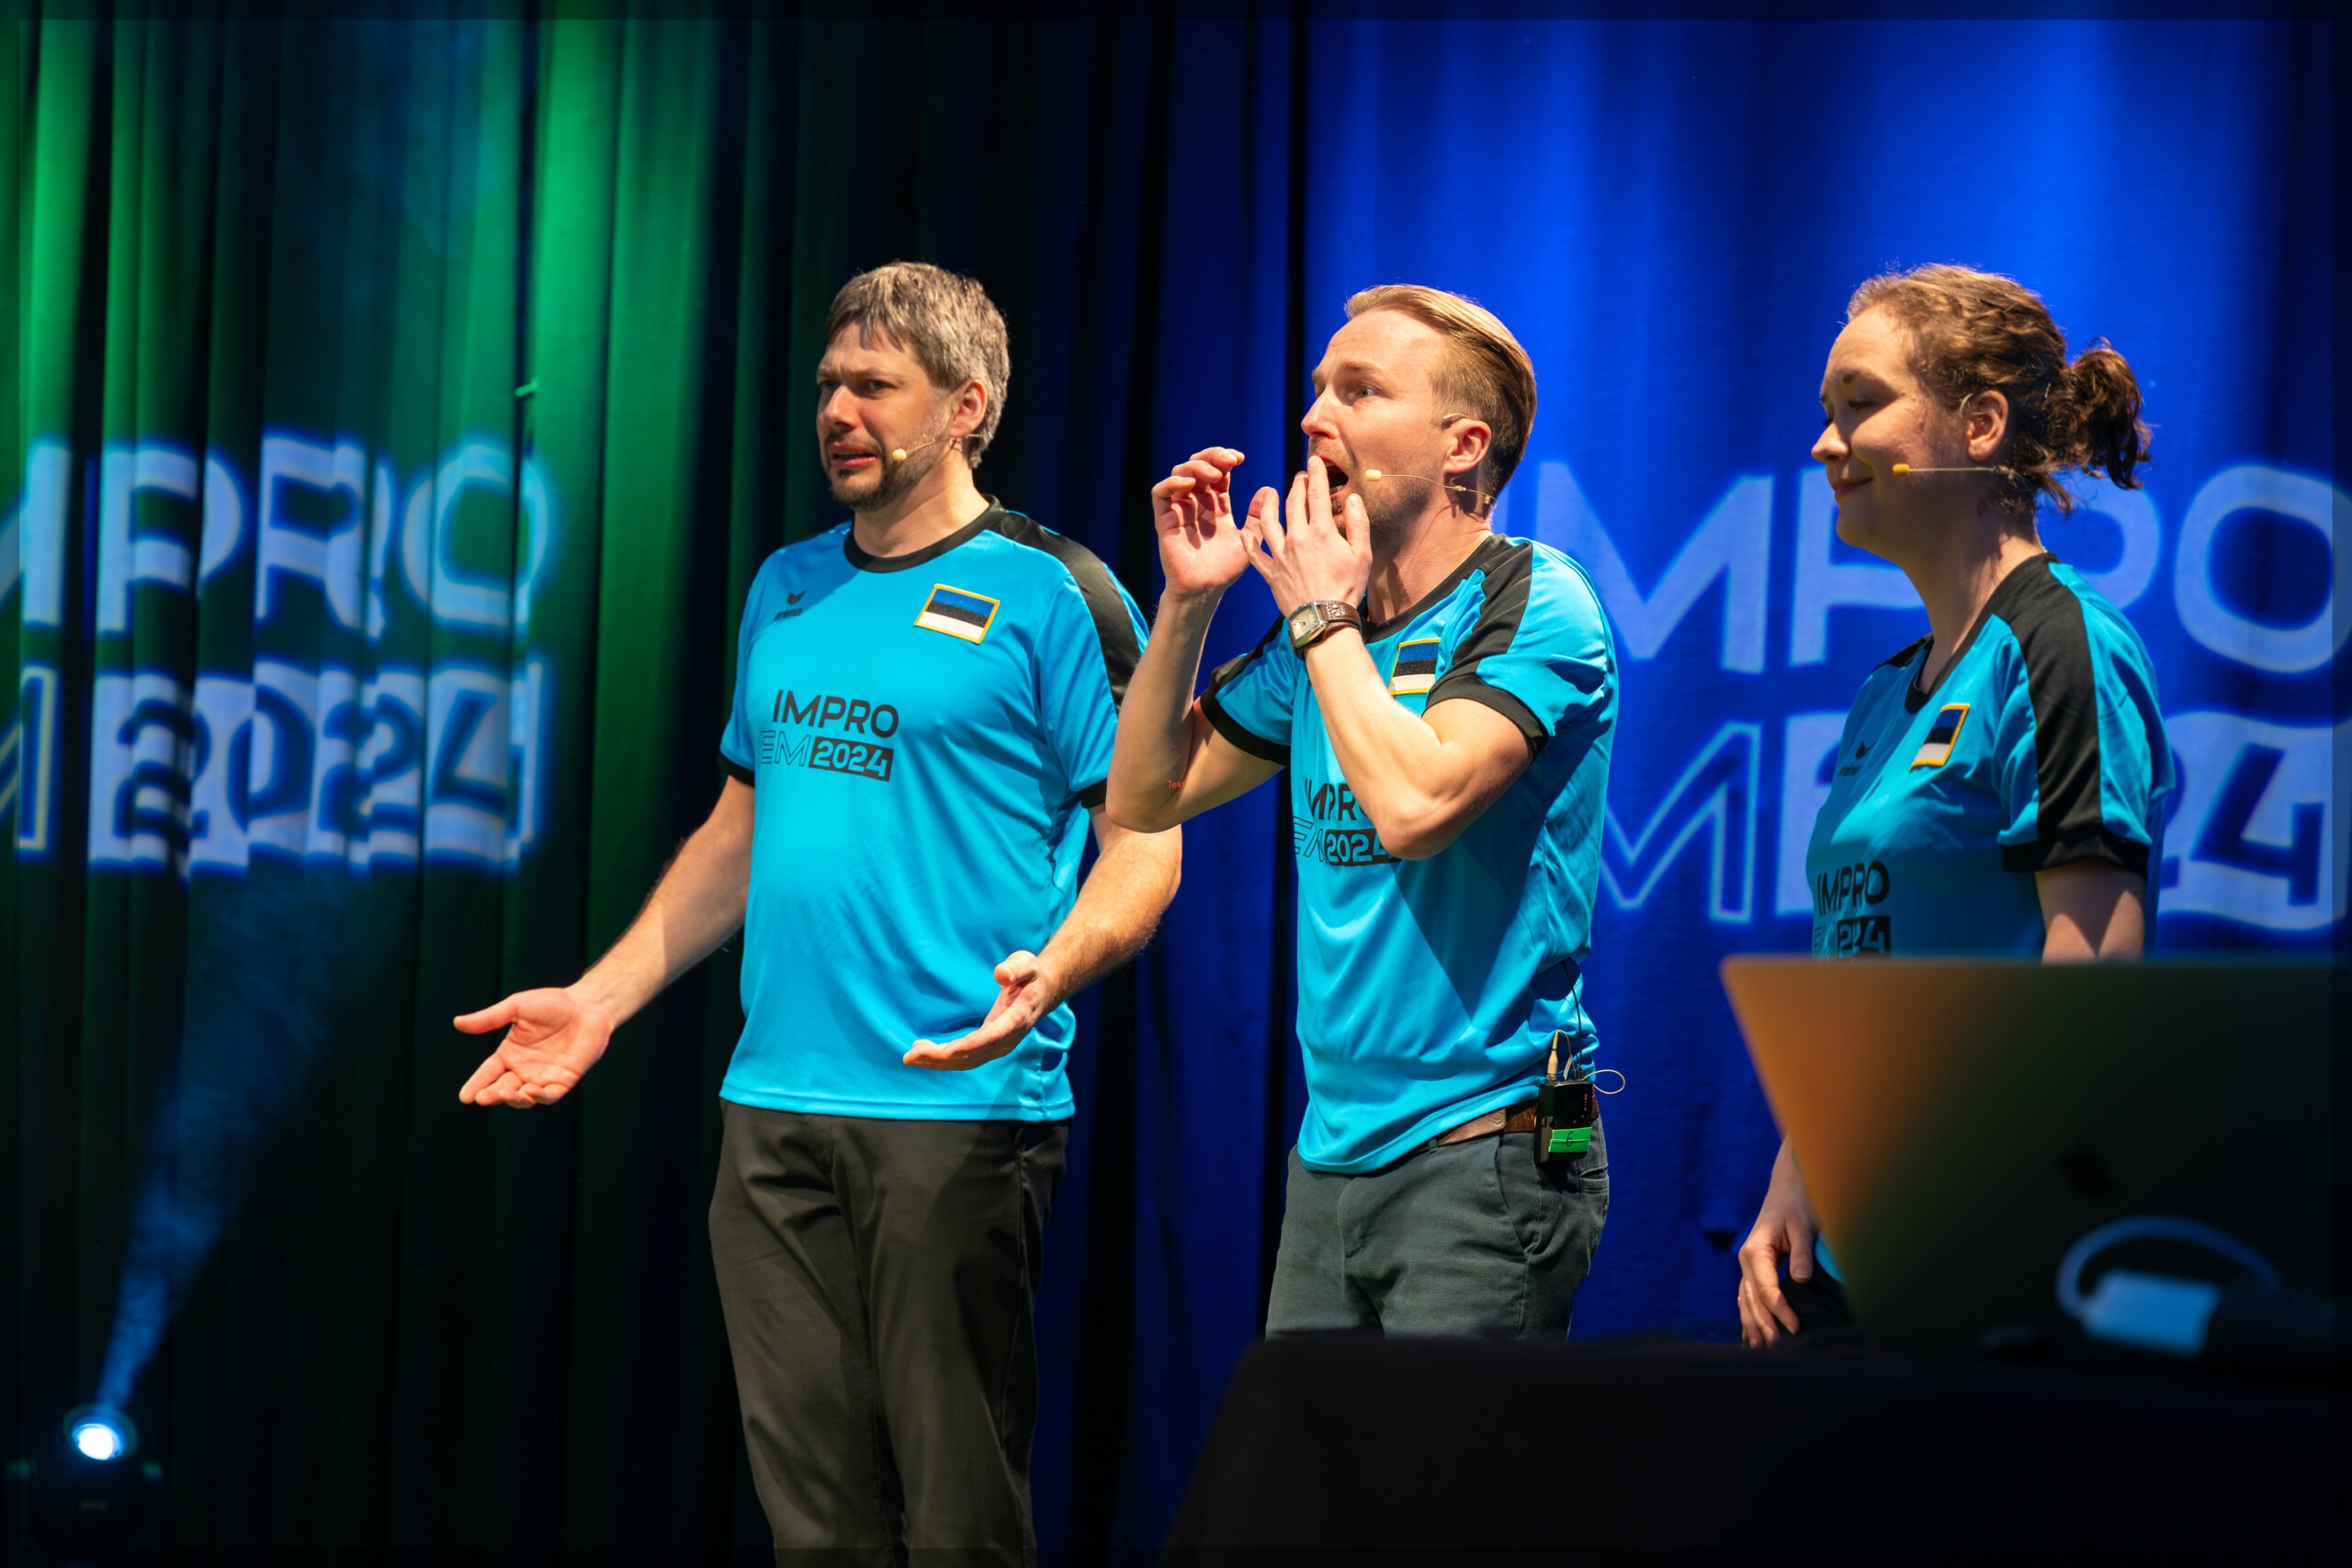 Pildil on Eesti impronäitlejad Maarius Pärn, Rauno Kaibiainen ja Rahel Otsa, kes seisavad laval, seljas sinised väikese Eesti lipuga spordisärgid. Kardinale nende selja taga on projitseeritud "IMPRO EM 2024".